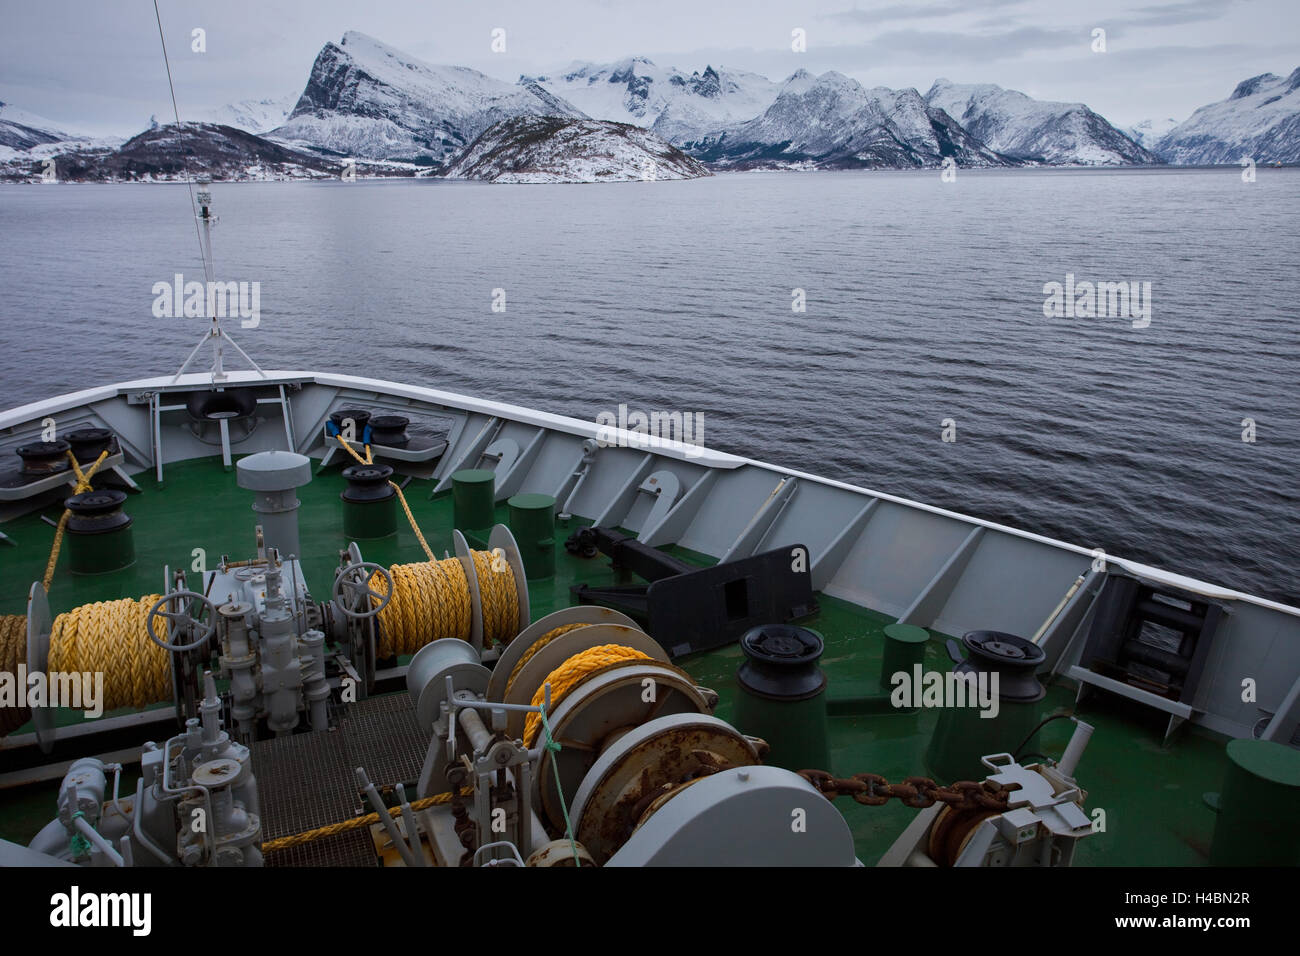 Hurtigruten de bateau, la mer, les montagnes, les hivers, la neige, l'Arctique, le nord du pays, le nord de la Norvège, la Norvège Banque D'Images